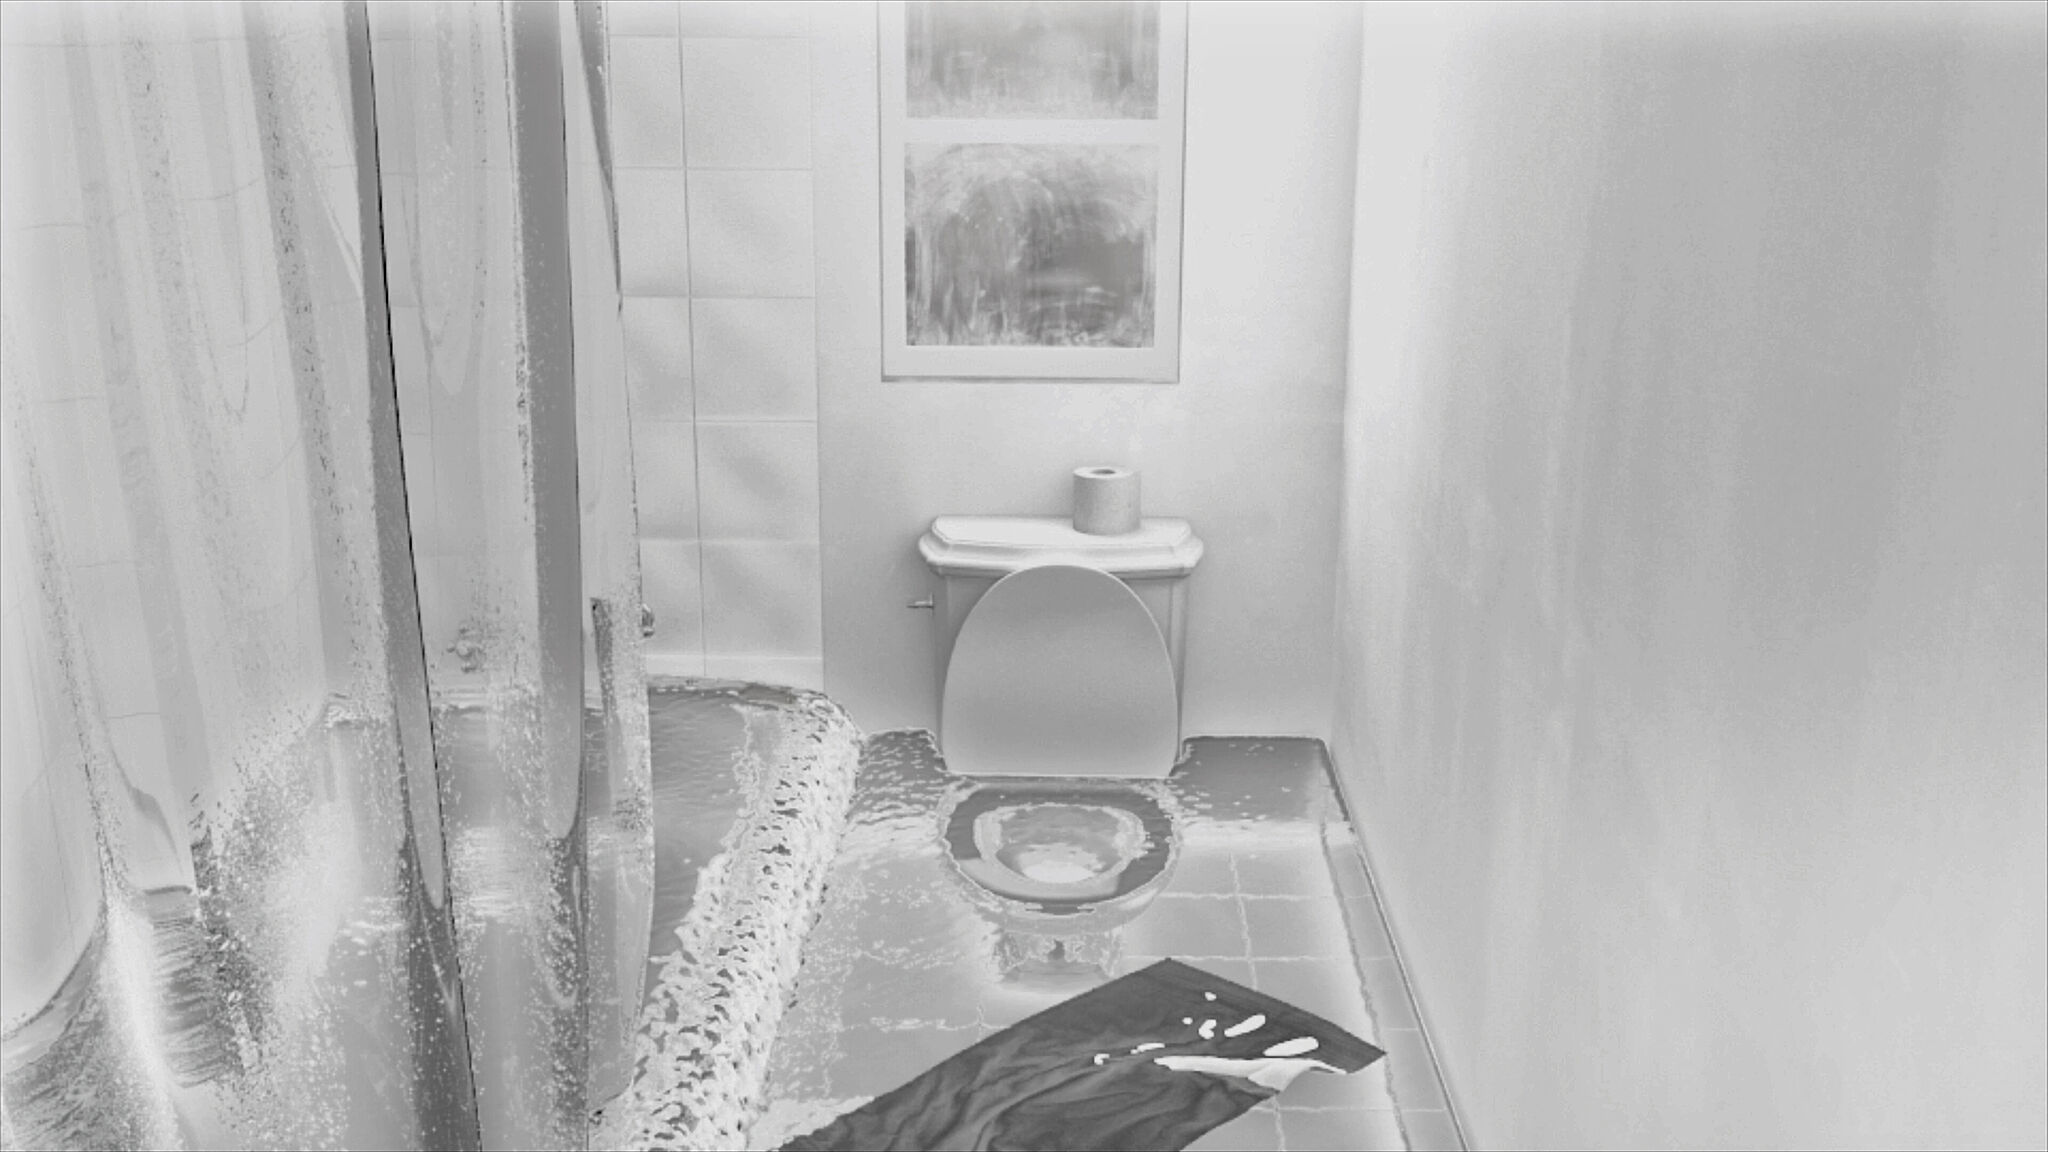 Film still of a bathroom.